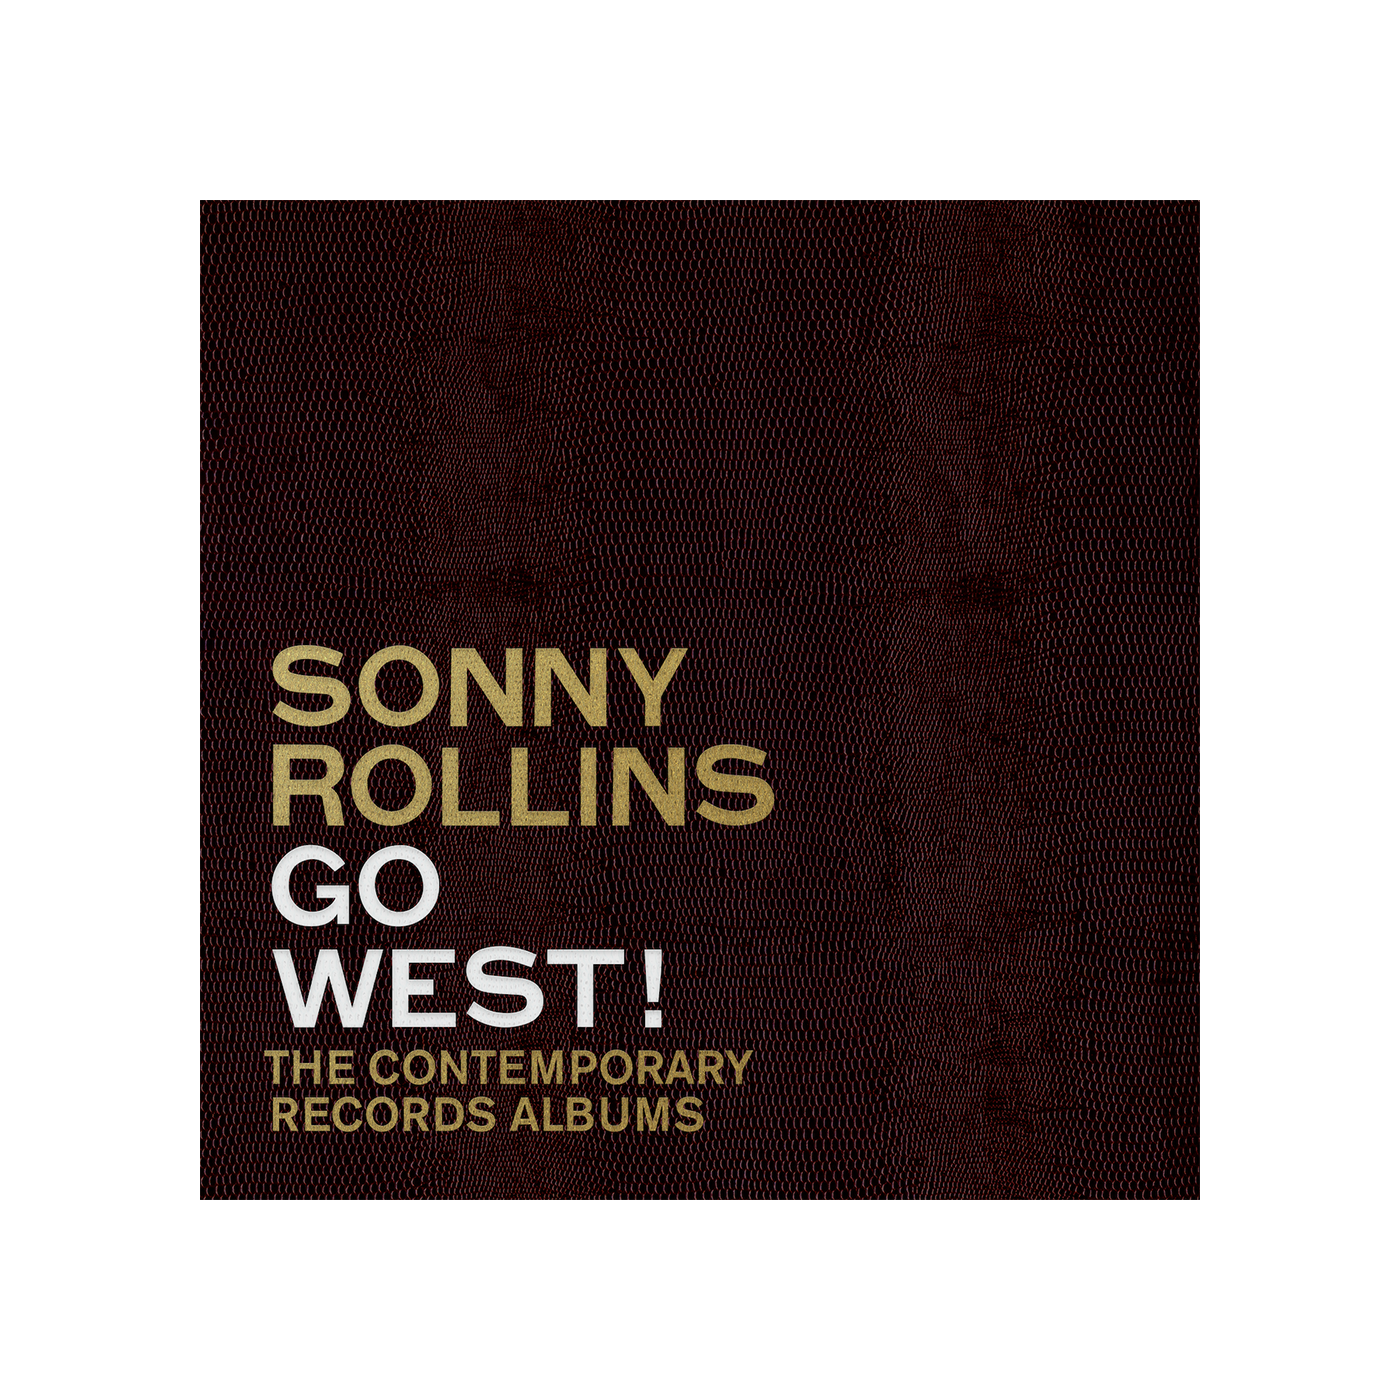 Go West! The Contemporary Records Albums Digital Album